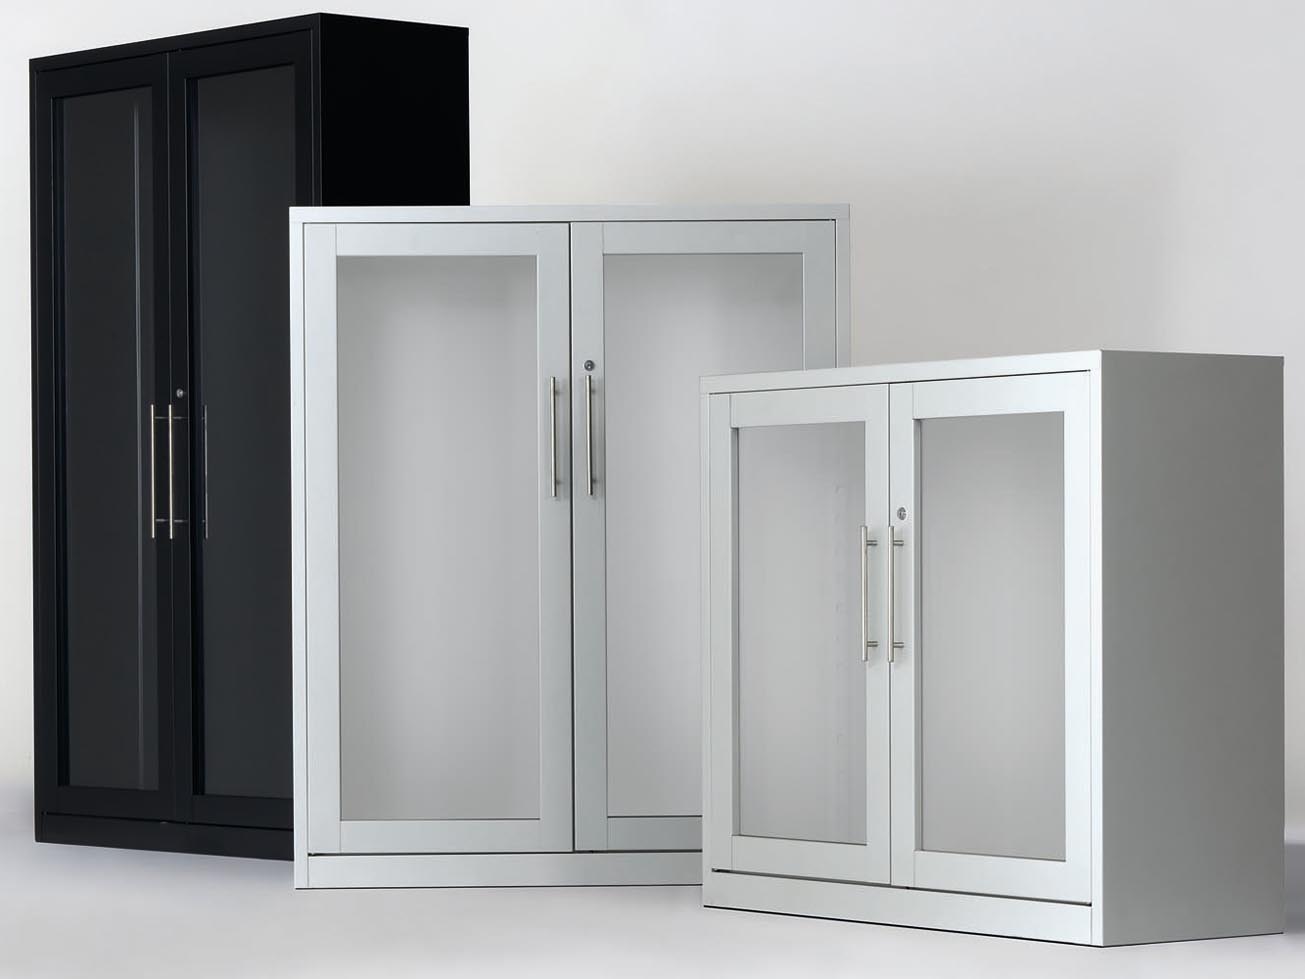 Armario metálico de puertas correderas de cristal en tres versiones.